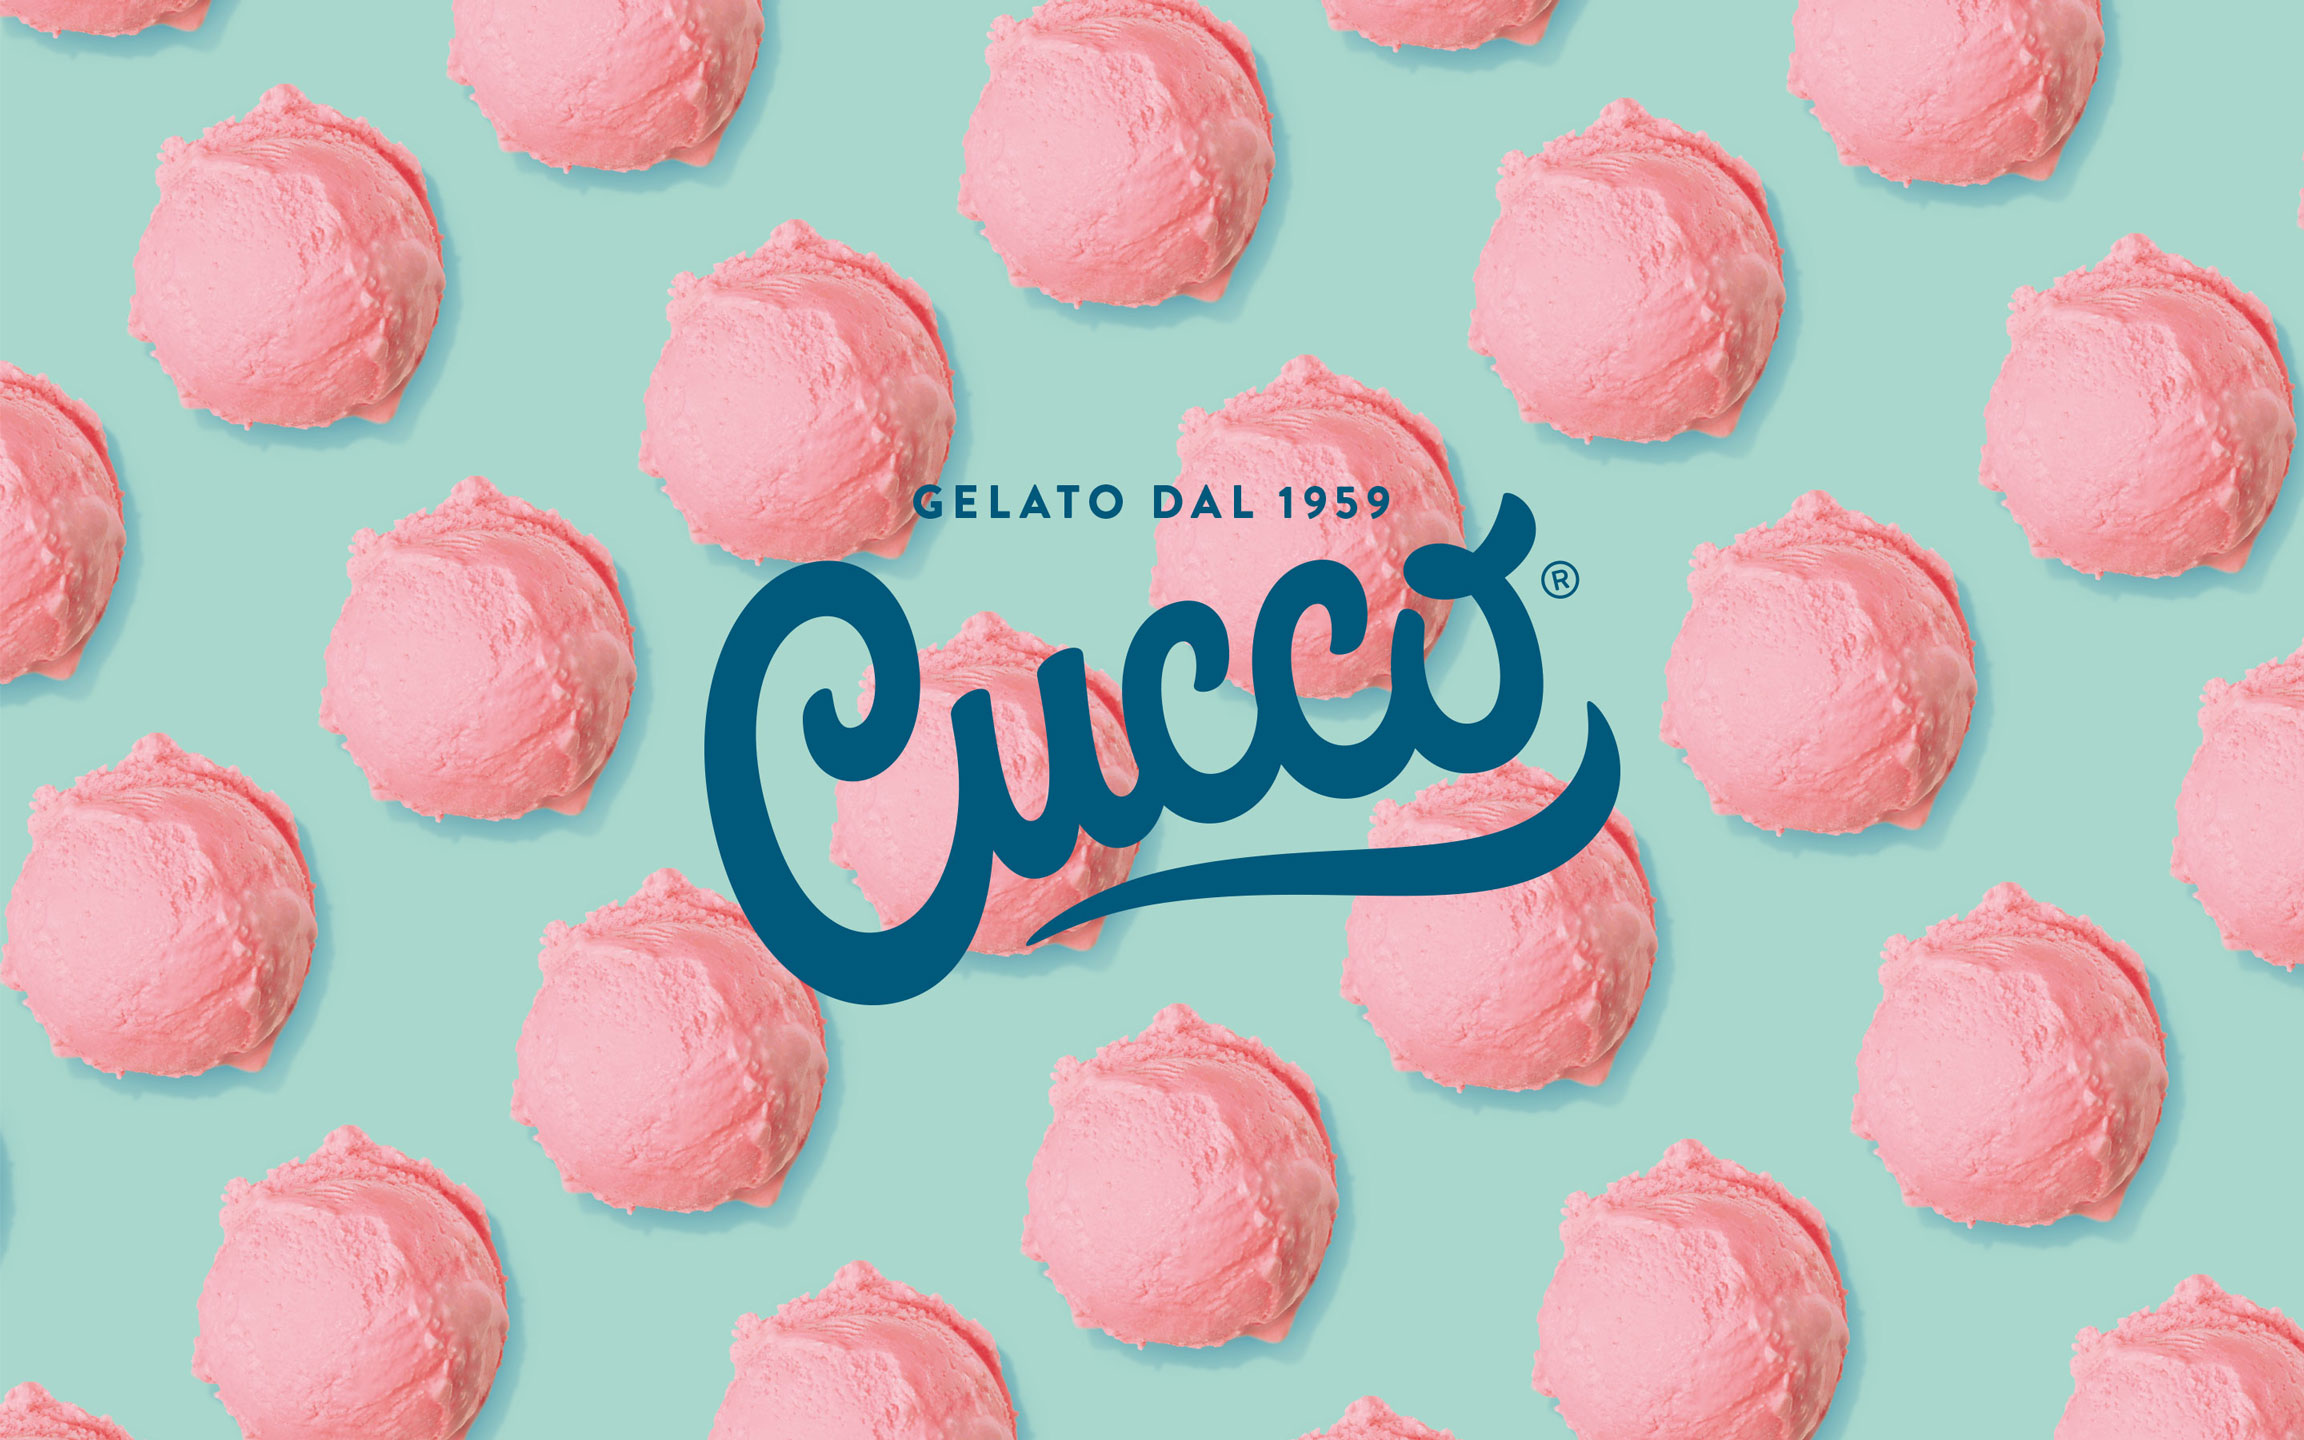 Cucco - Gelato dal 1959 - Logo auf hellgrünem Hintergrund mit rosanen Erdbeereiskugeln